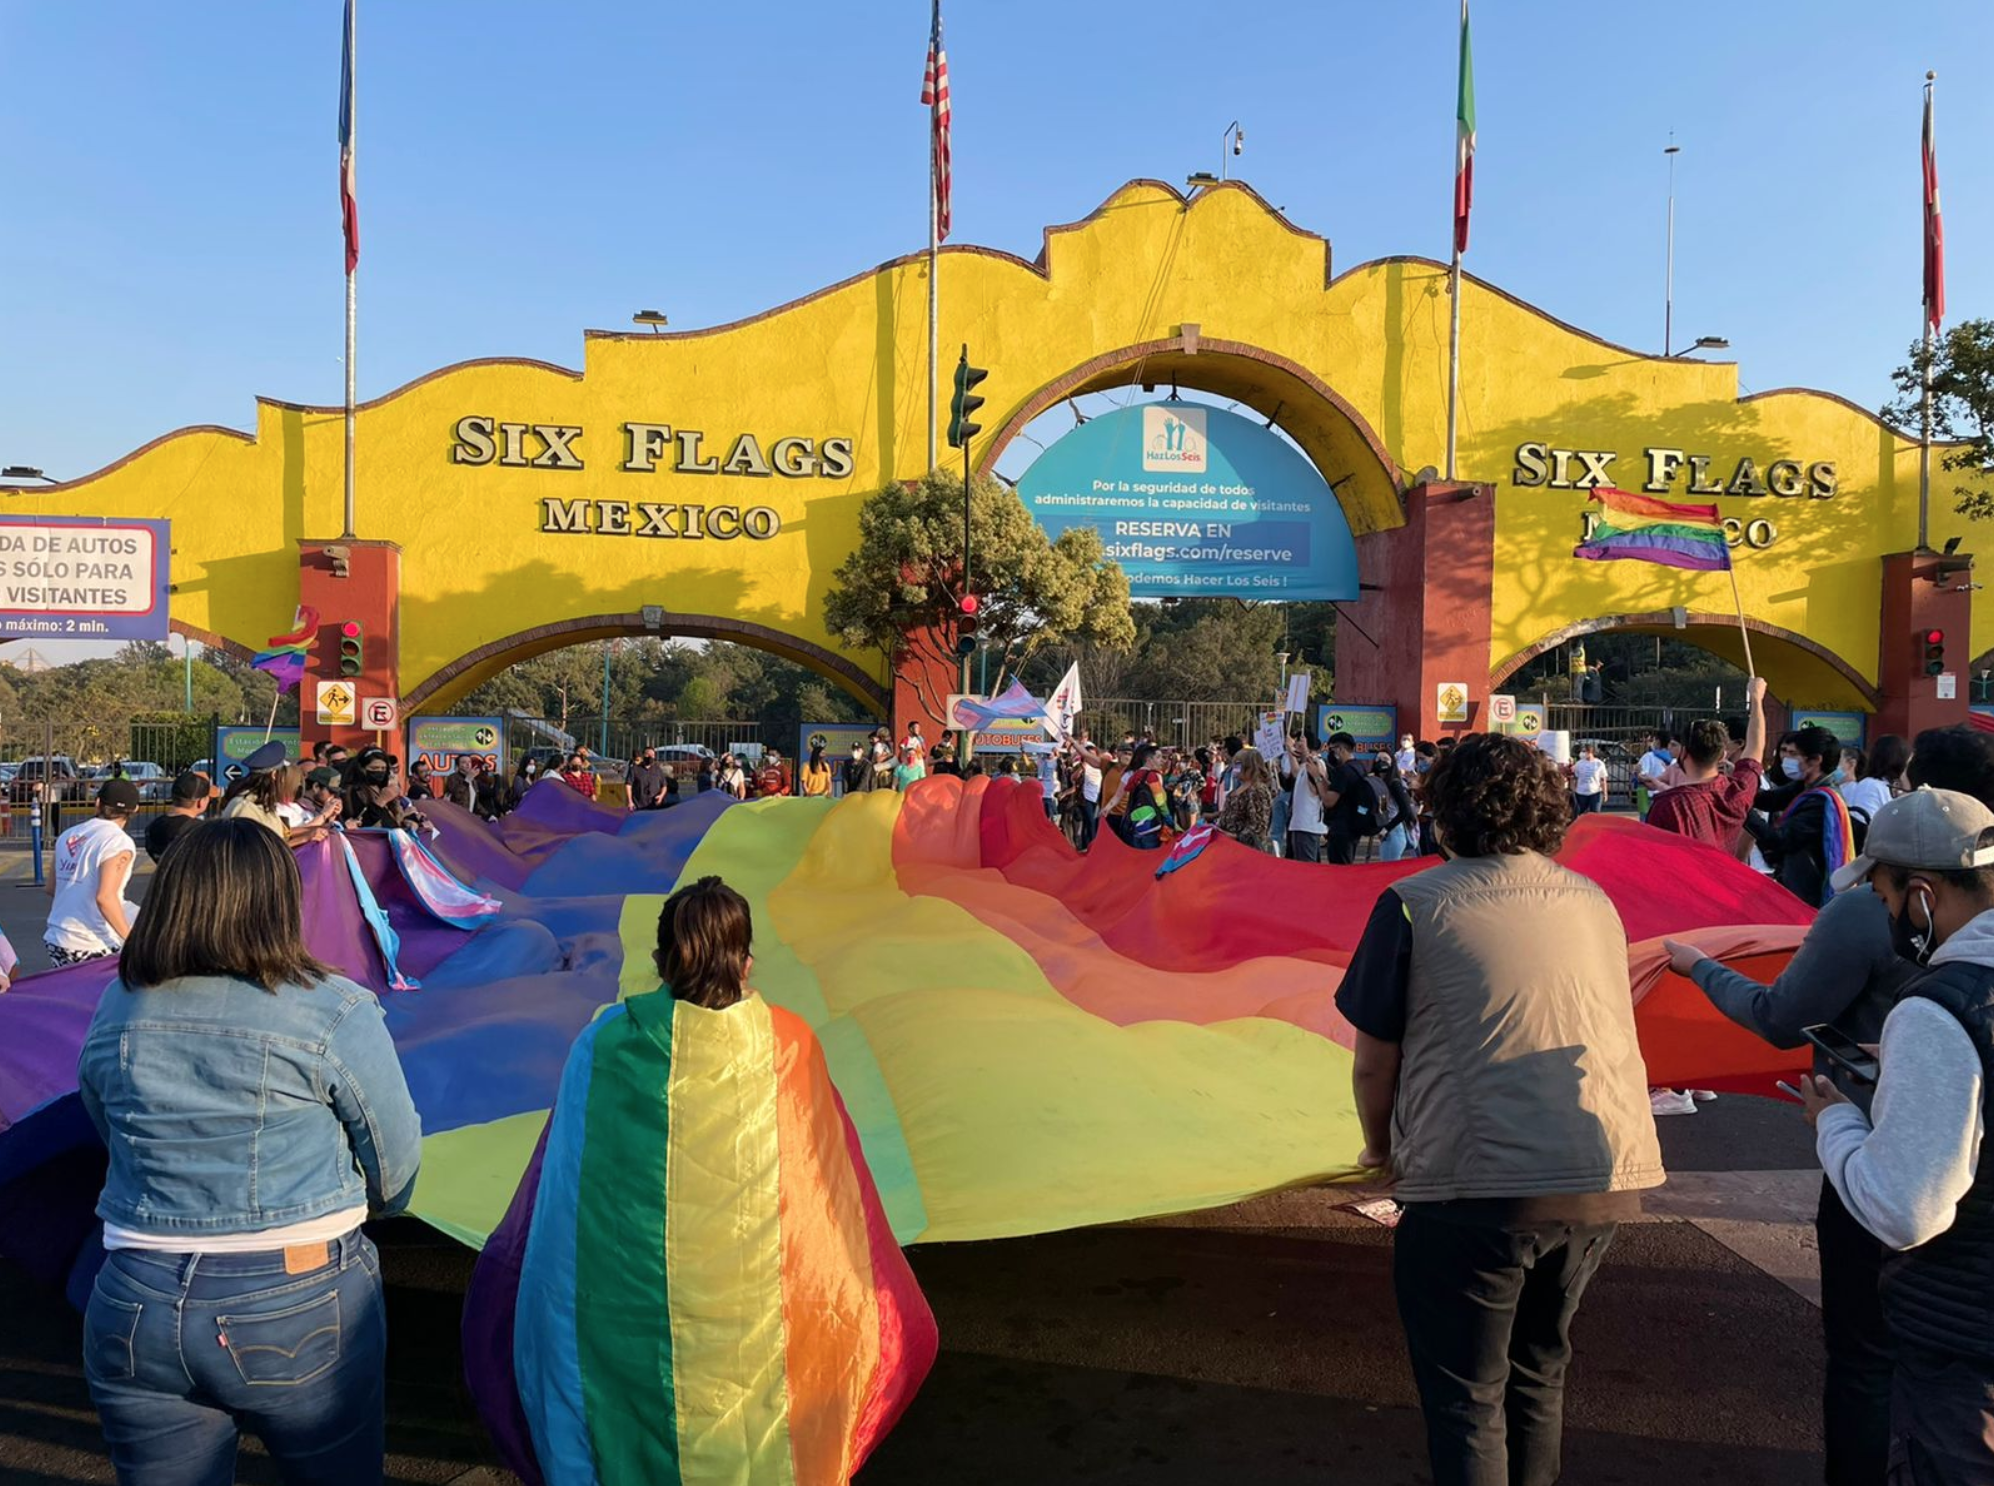 Six Flags se disculpa por discriminación contra pareja homosexual y asegura entorno inclusivo